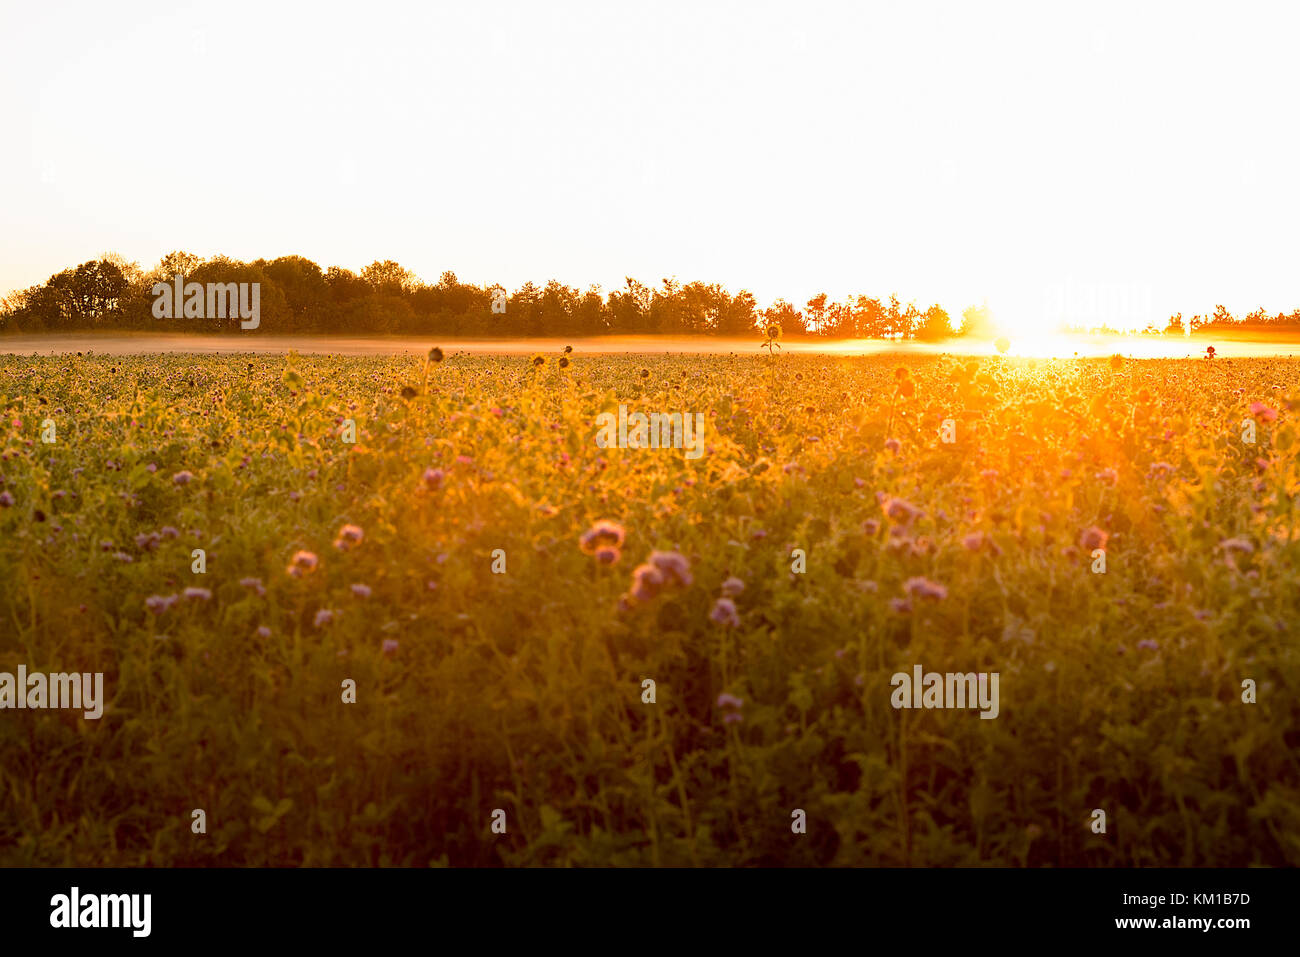 El sol por la mañana temprano de un campo de cultivo con unos altos girasoles absorben los rayos del sol. Foto de stock